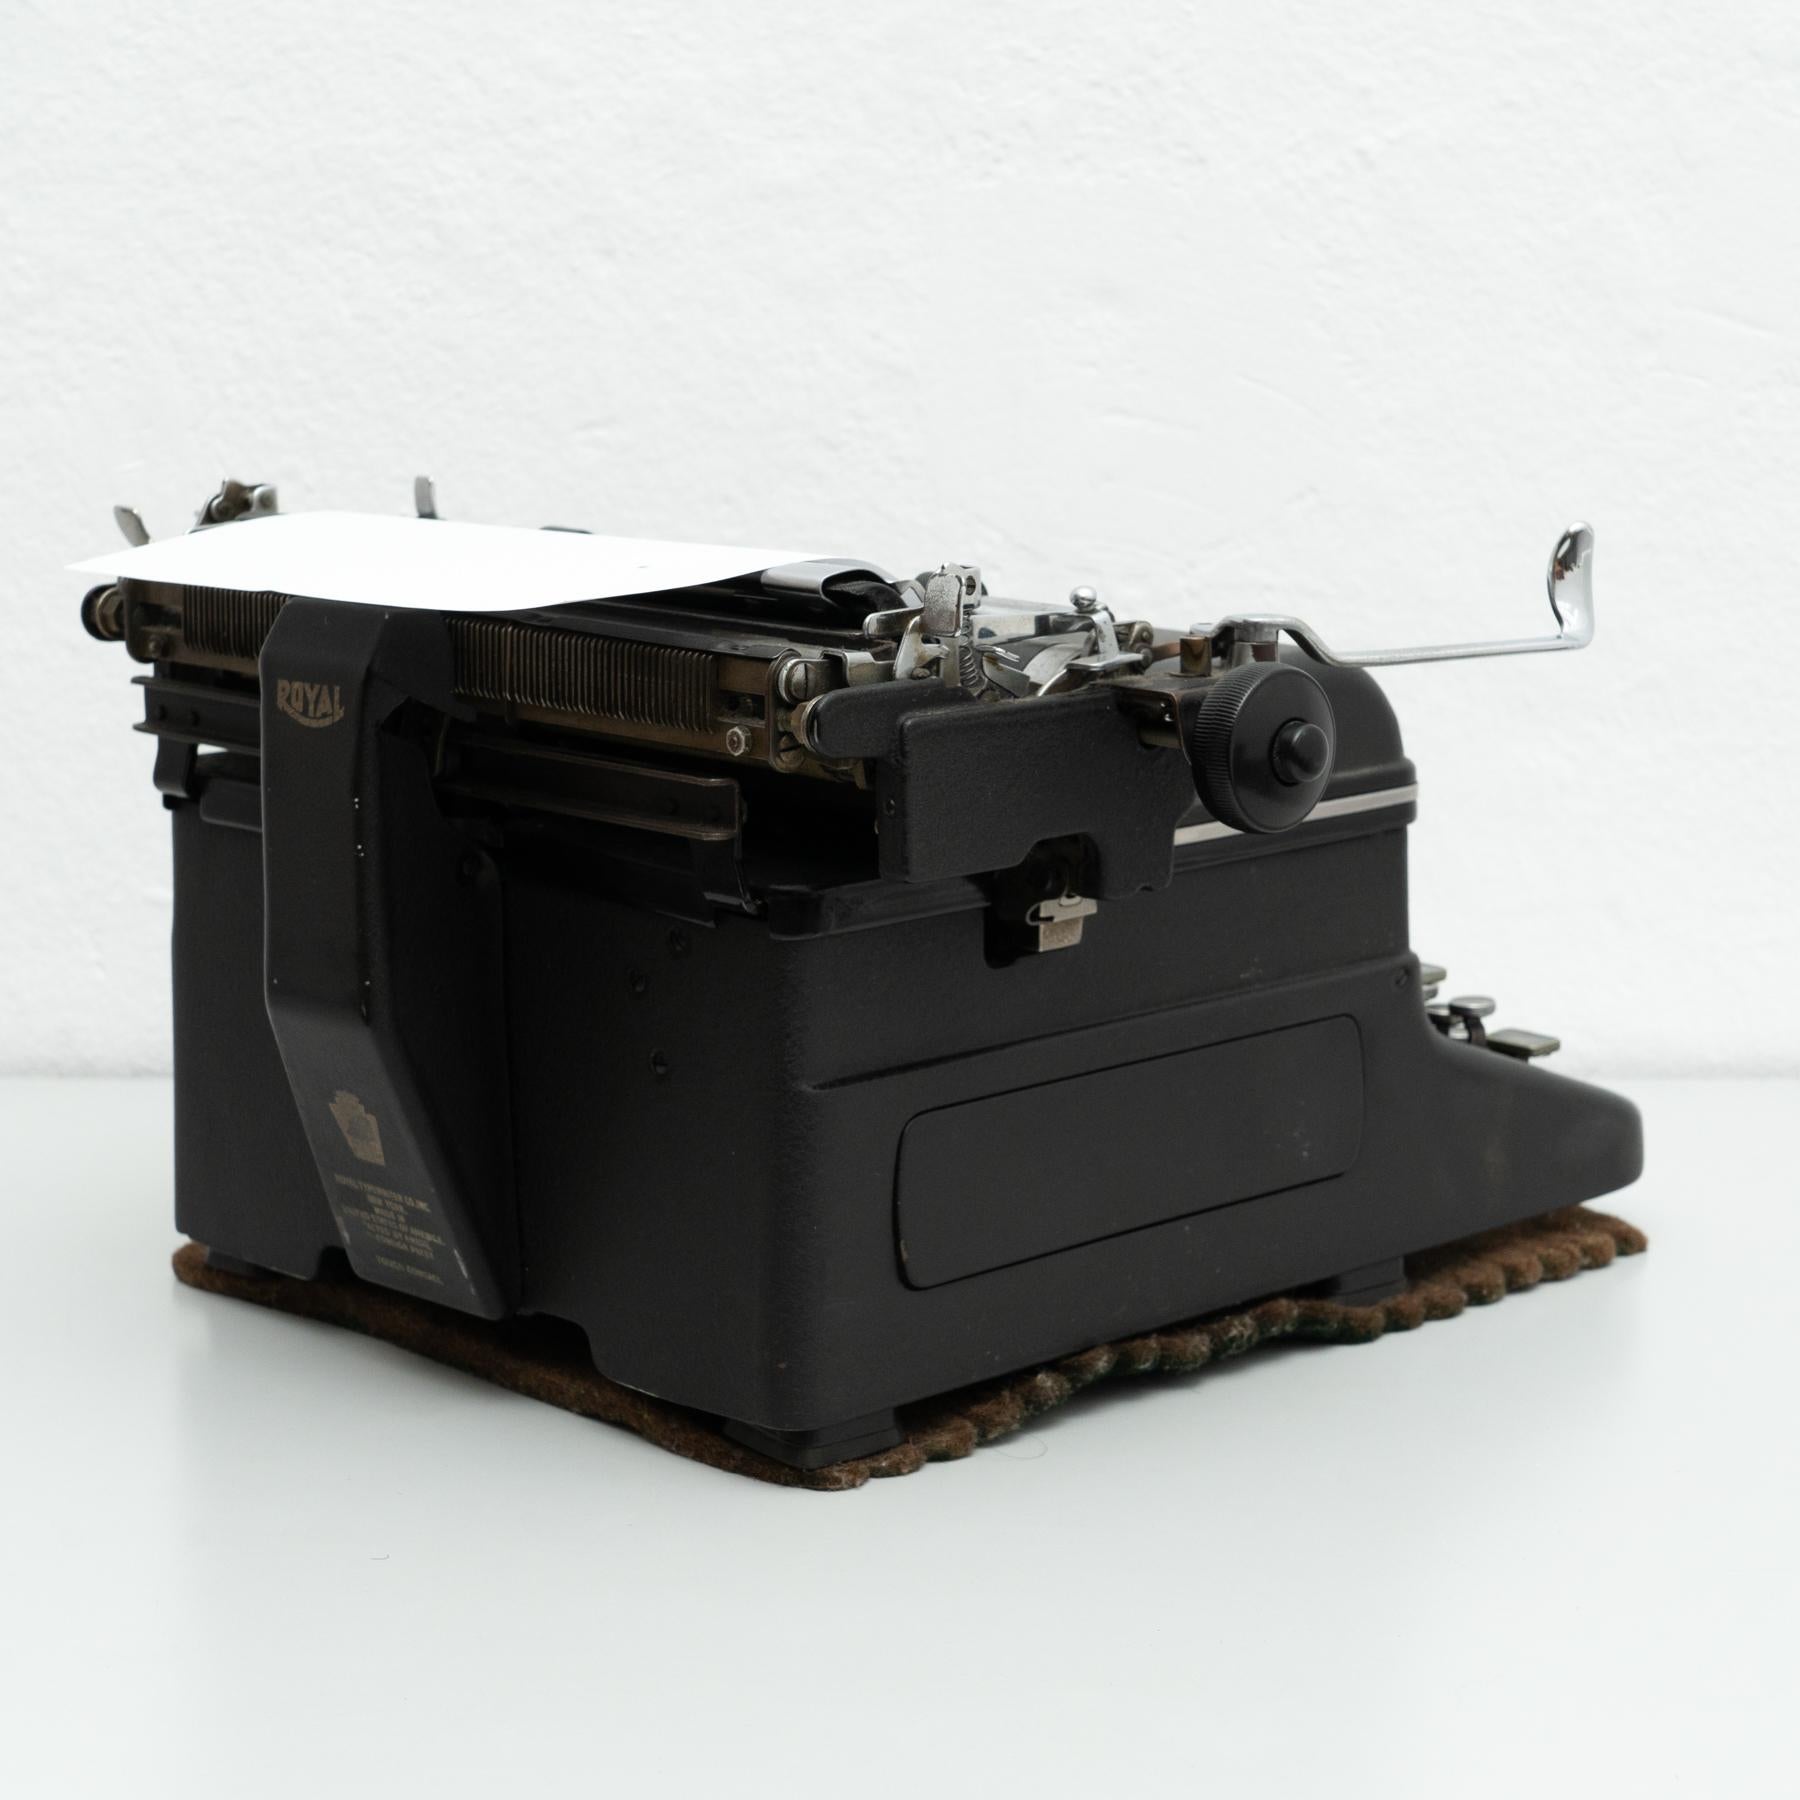 old royal typewriter